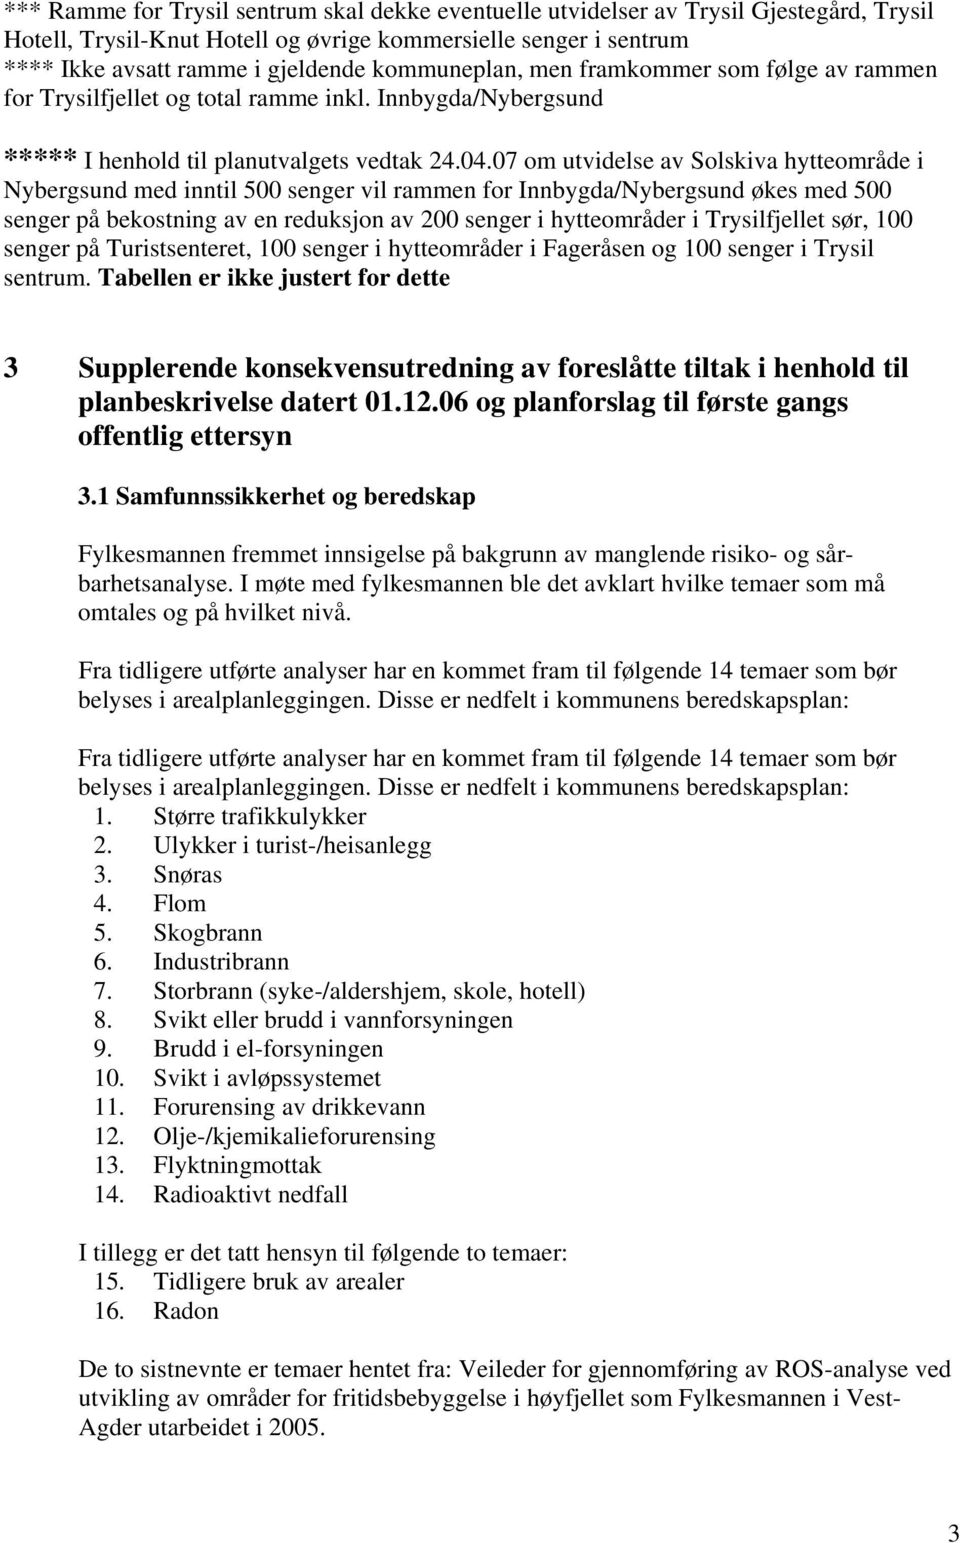 07 om utvidelse av Solskiva hytteområde i Nybergsund med inntil 500 senger vil rammen for Innbygda/Nybergsund økes med 500 senger på bekostning av en reduksjon av 200 senger i hytteområder i